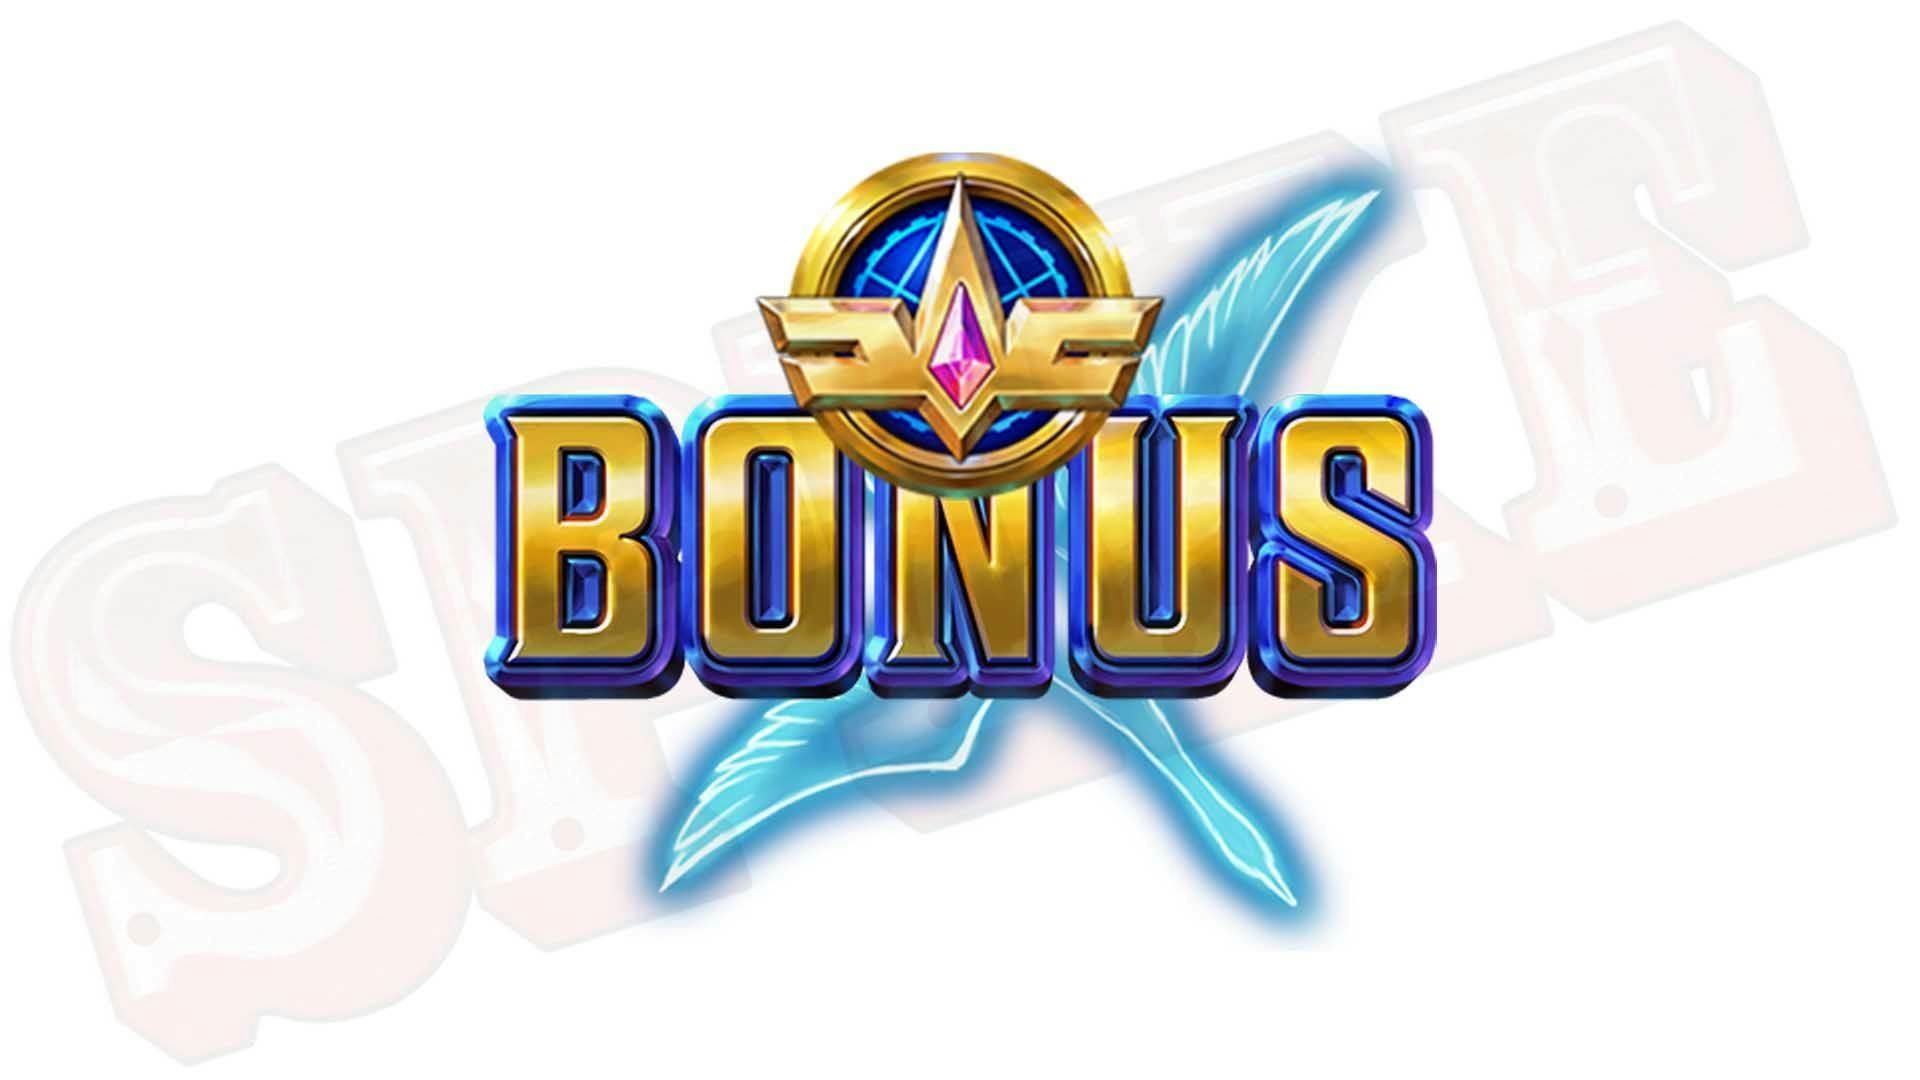 Cygnus 4 Slot Bonus